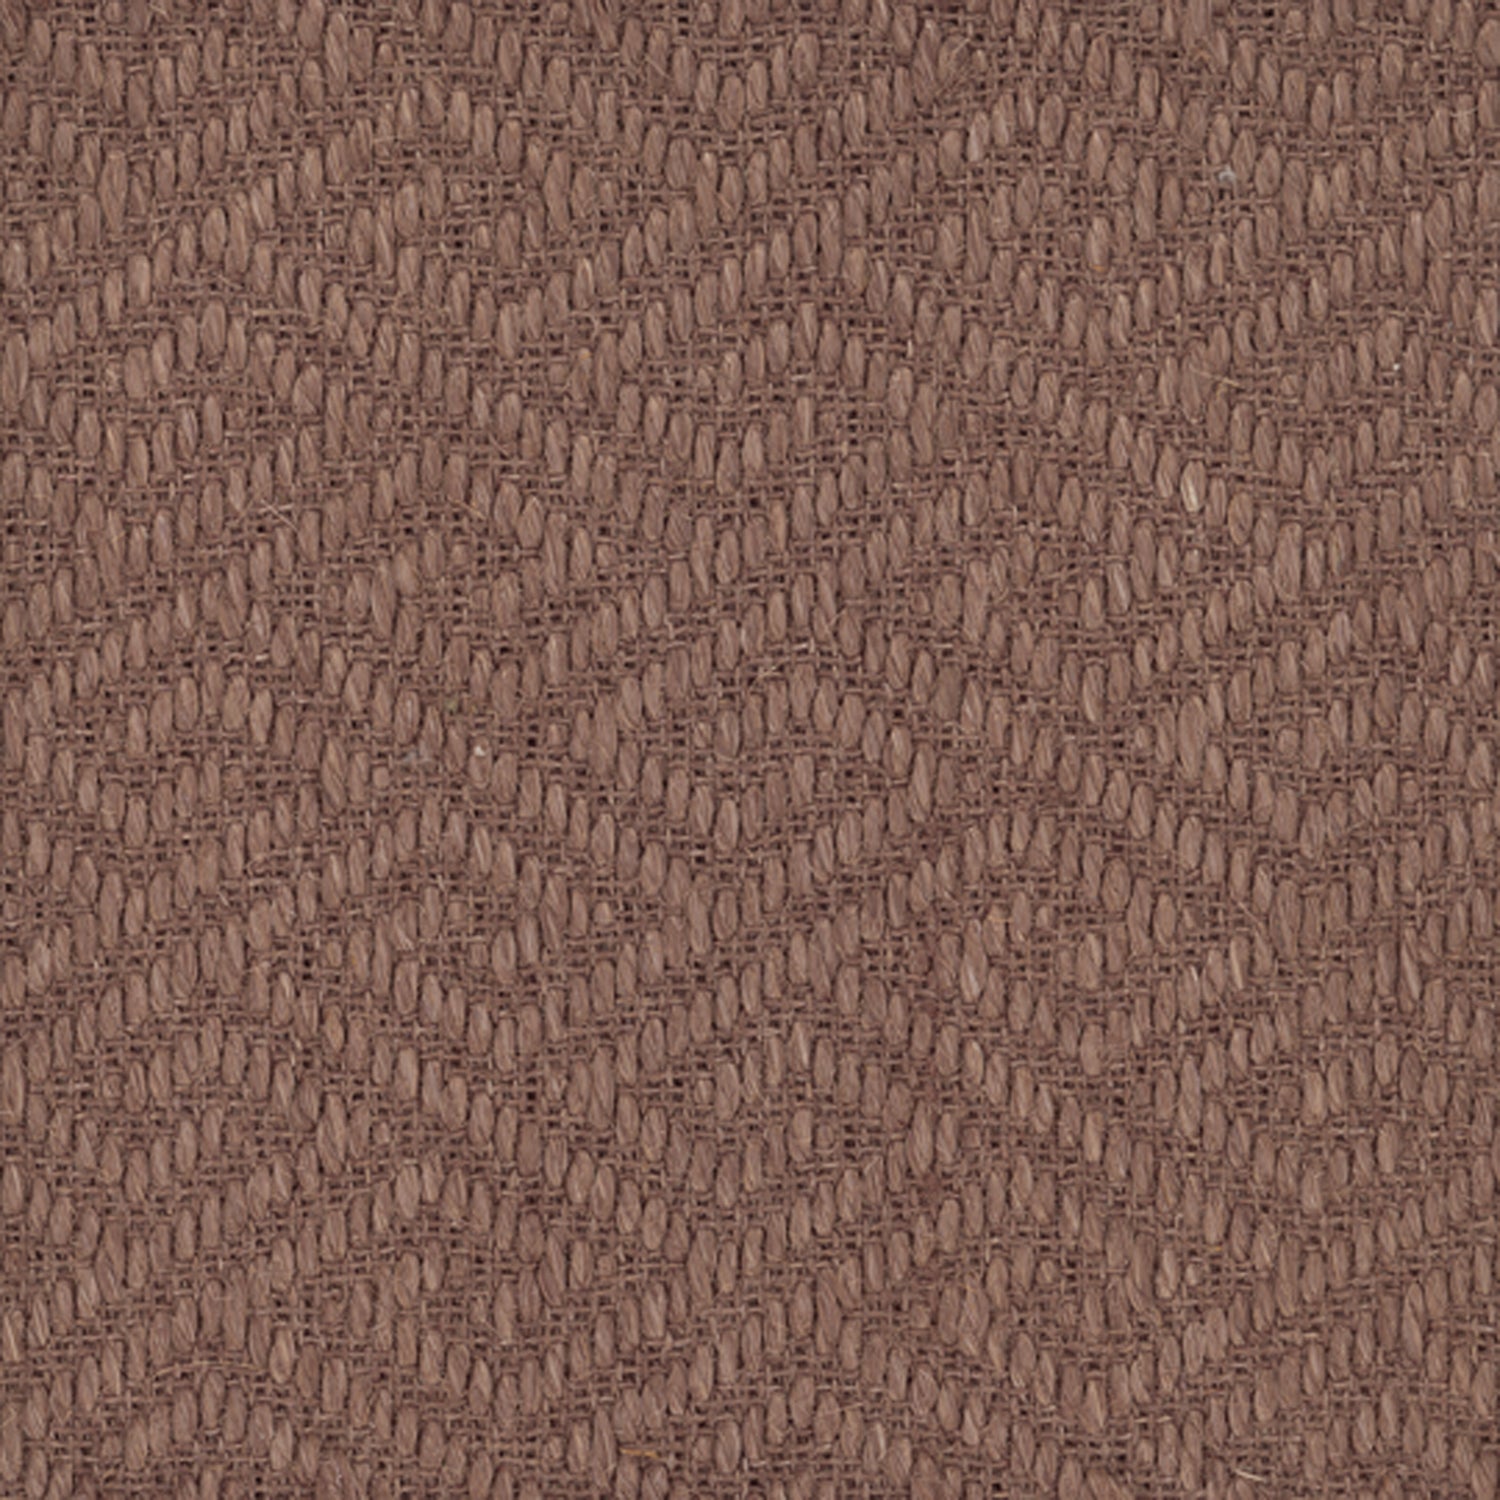 Sisal broadloom carpet swatch in a dimensional geometric weave in dark brown.